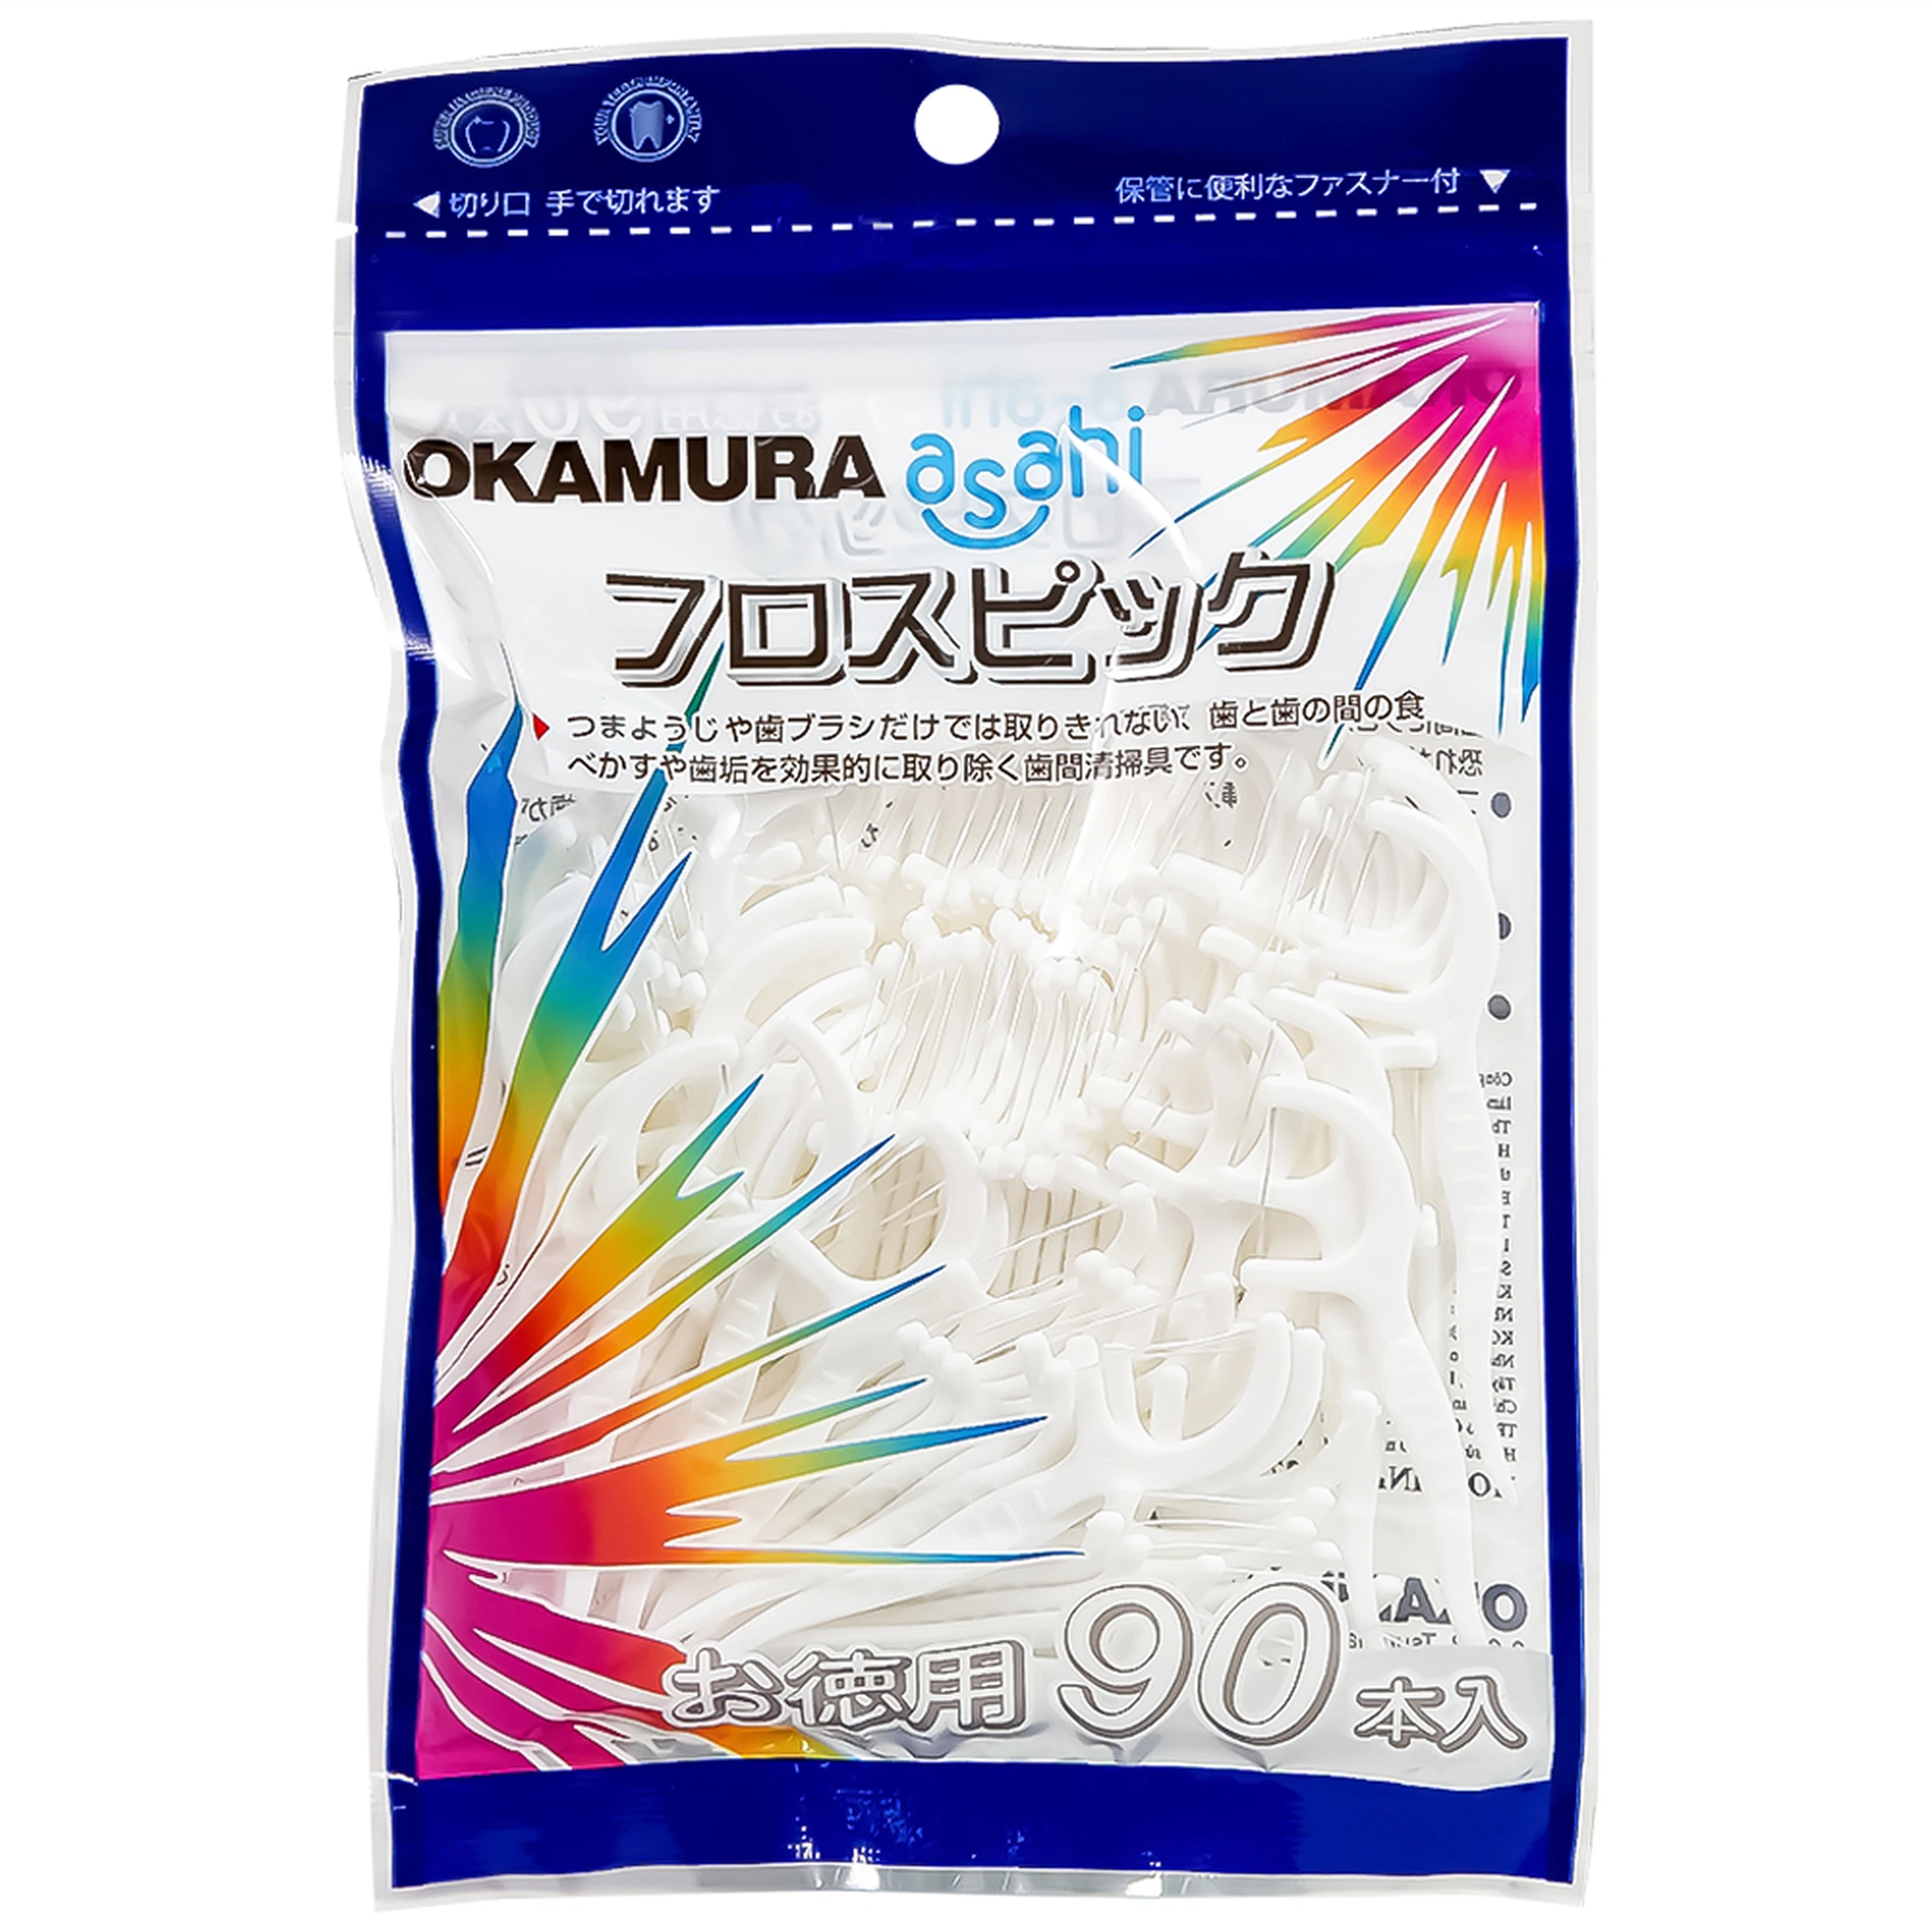 Tăm chỉ kẽ răng Okamura làm sạch mảng bám thức ăn dư thừa trong kẽ răng (90 cây) 